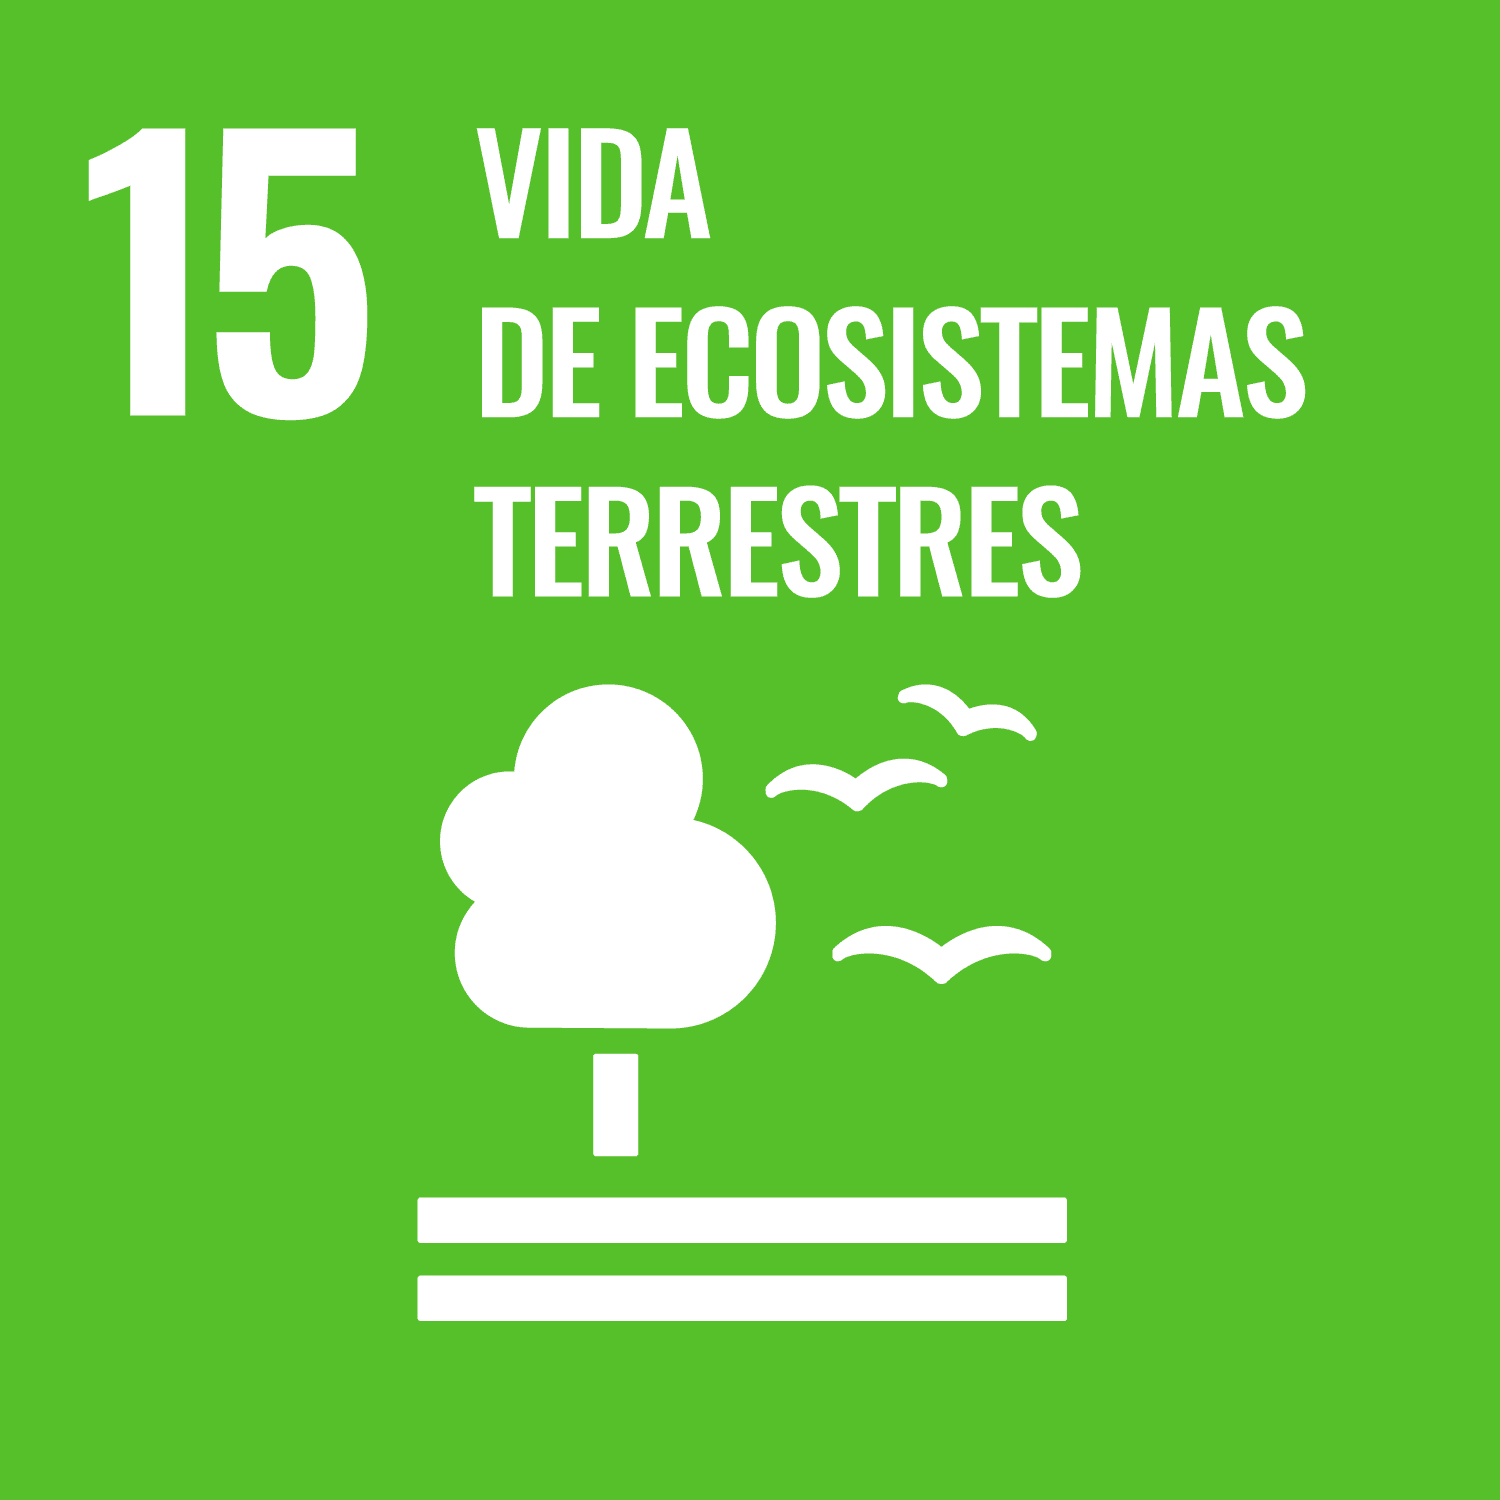 Proteger, restablecer y promover el uso sostenible de los ecosistemas terrestres, gestionar sosteniblemente los bosques, luchar contra la desertificación, detener e invertir la degradación de las tierras y detener la pérdida de la diversidad biológica.